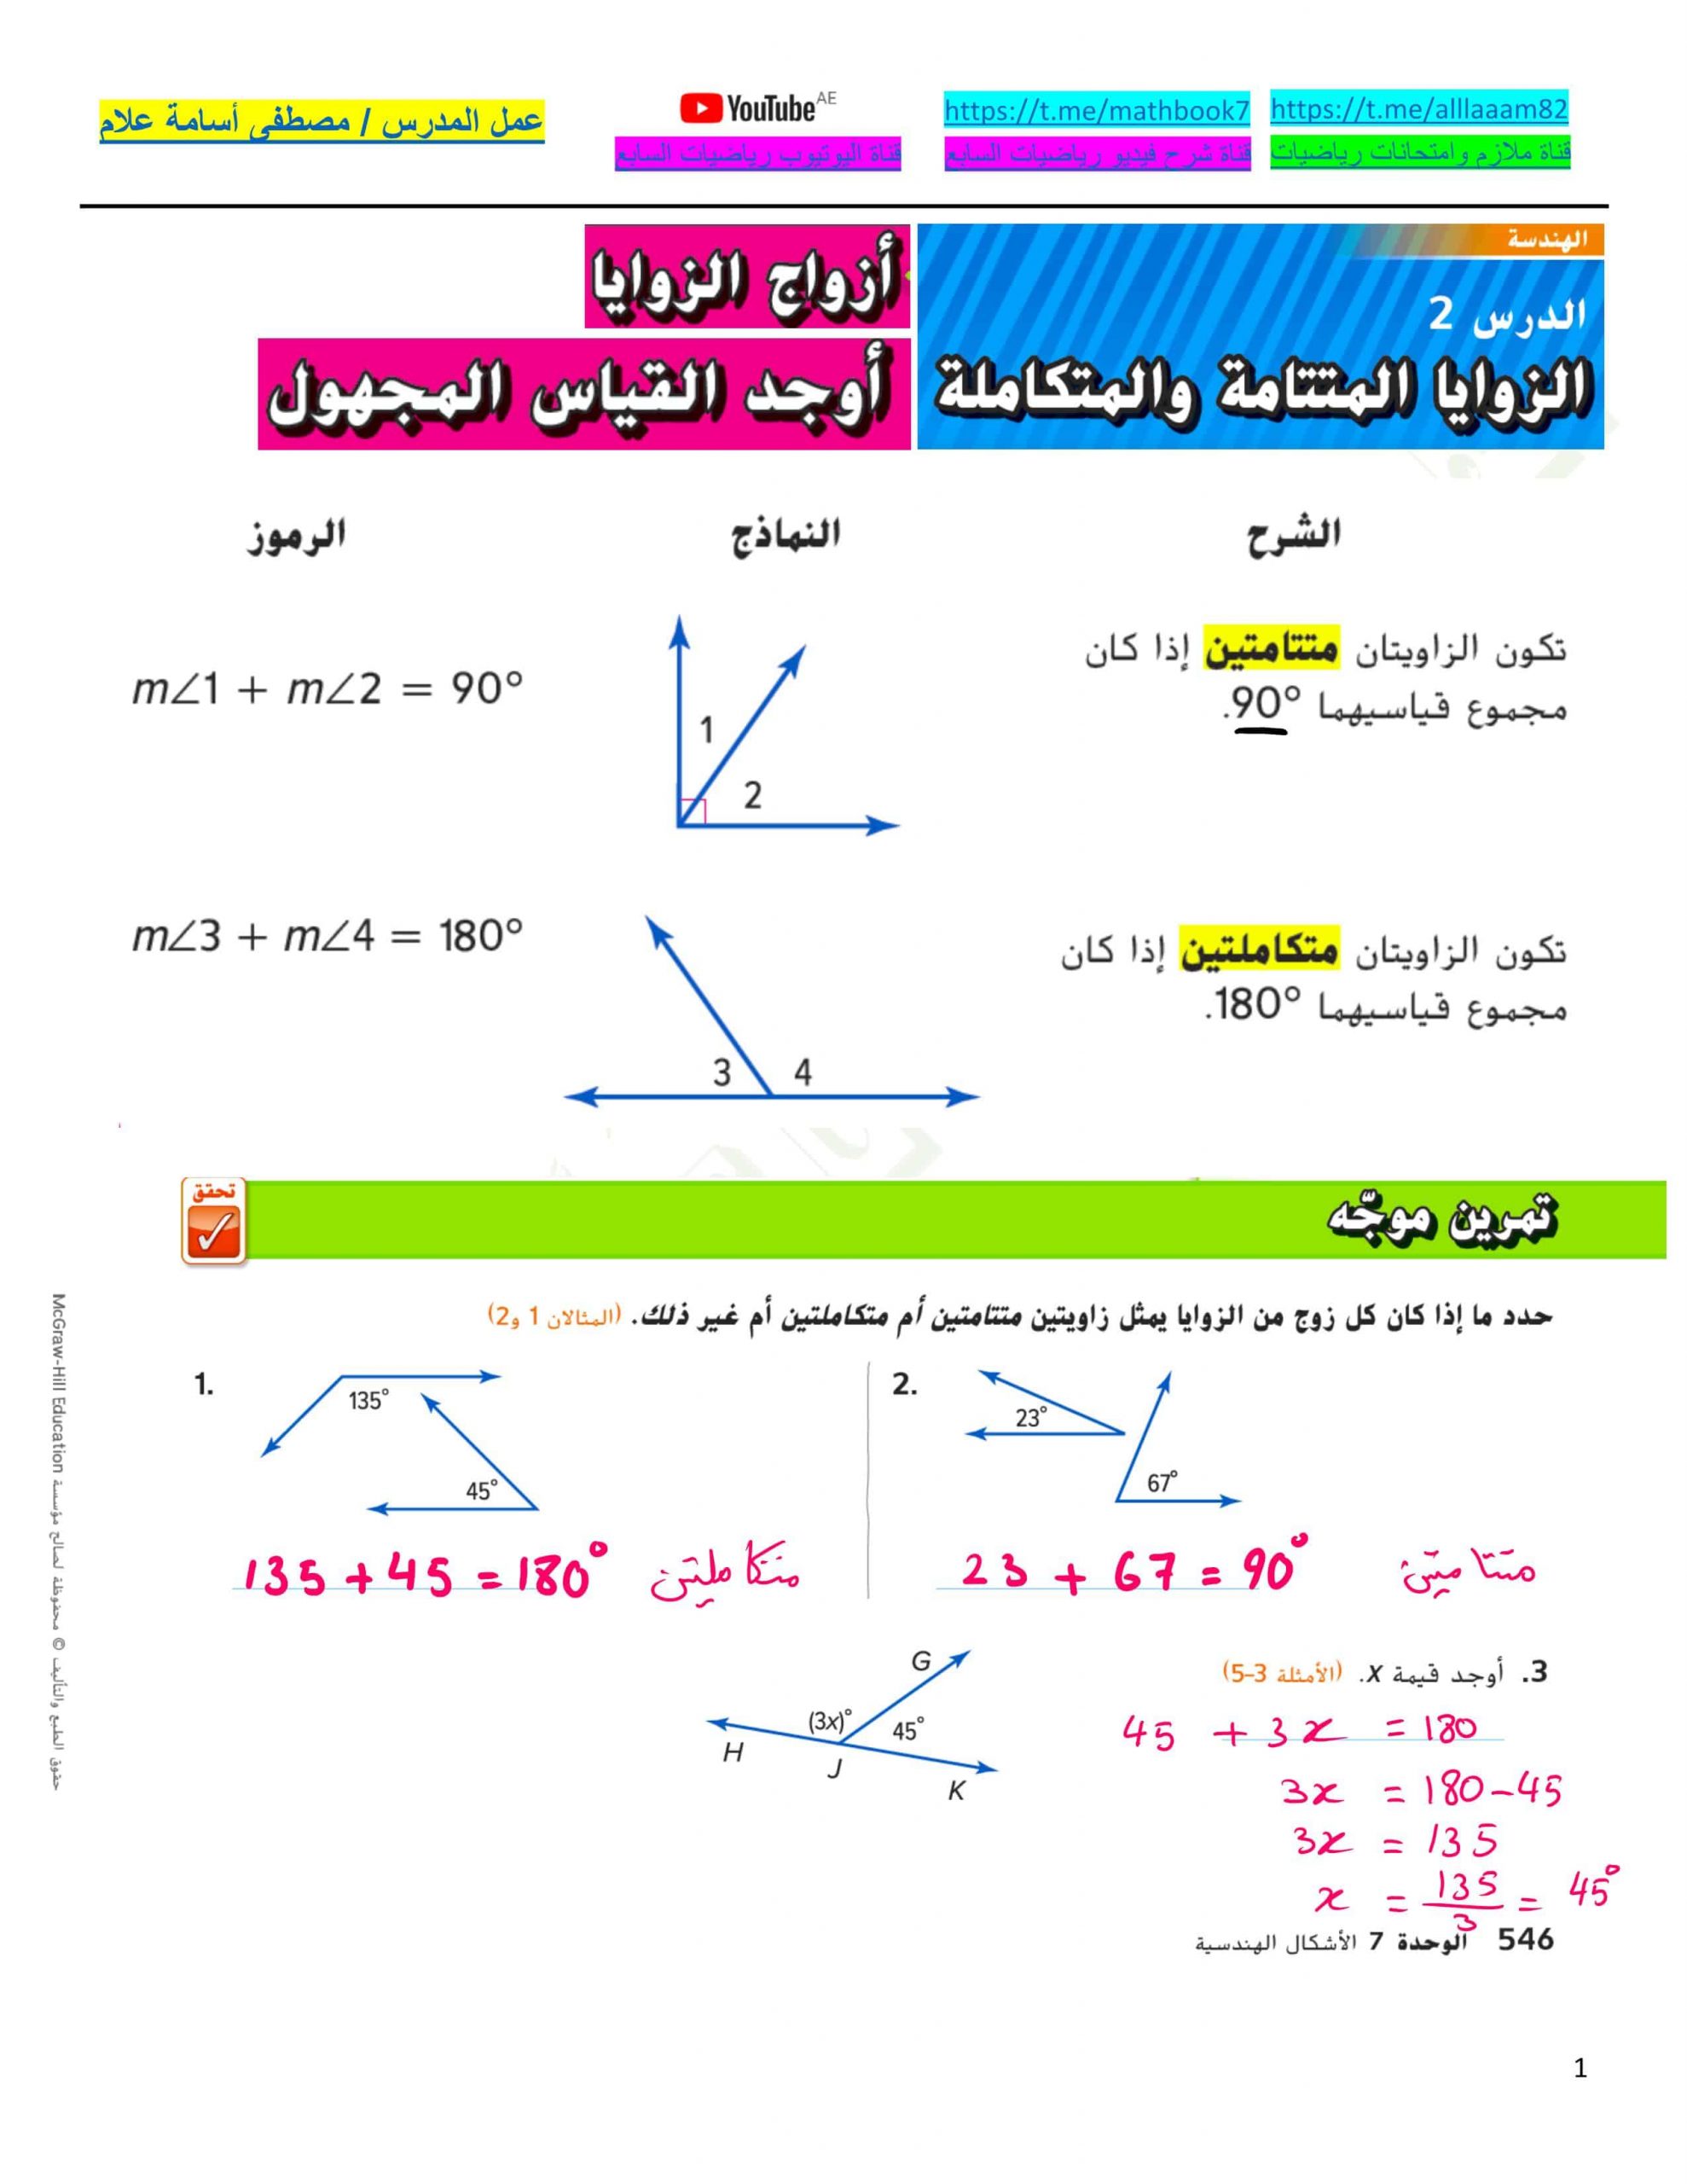 حل درس الزوايا المتتالية والمتكاملة الصف السابع مادة الرياضيات المتكاملة 